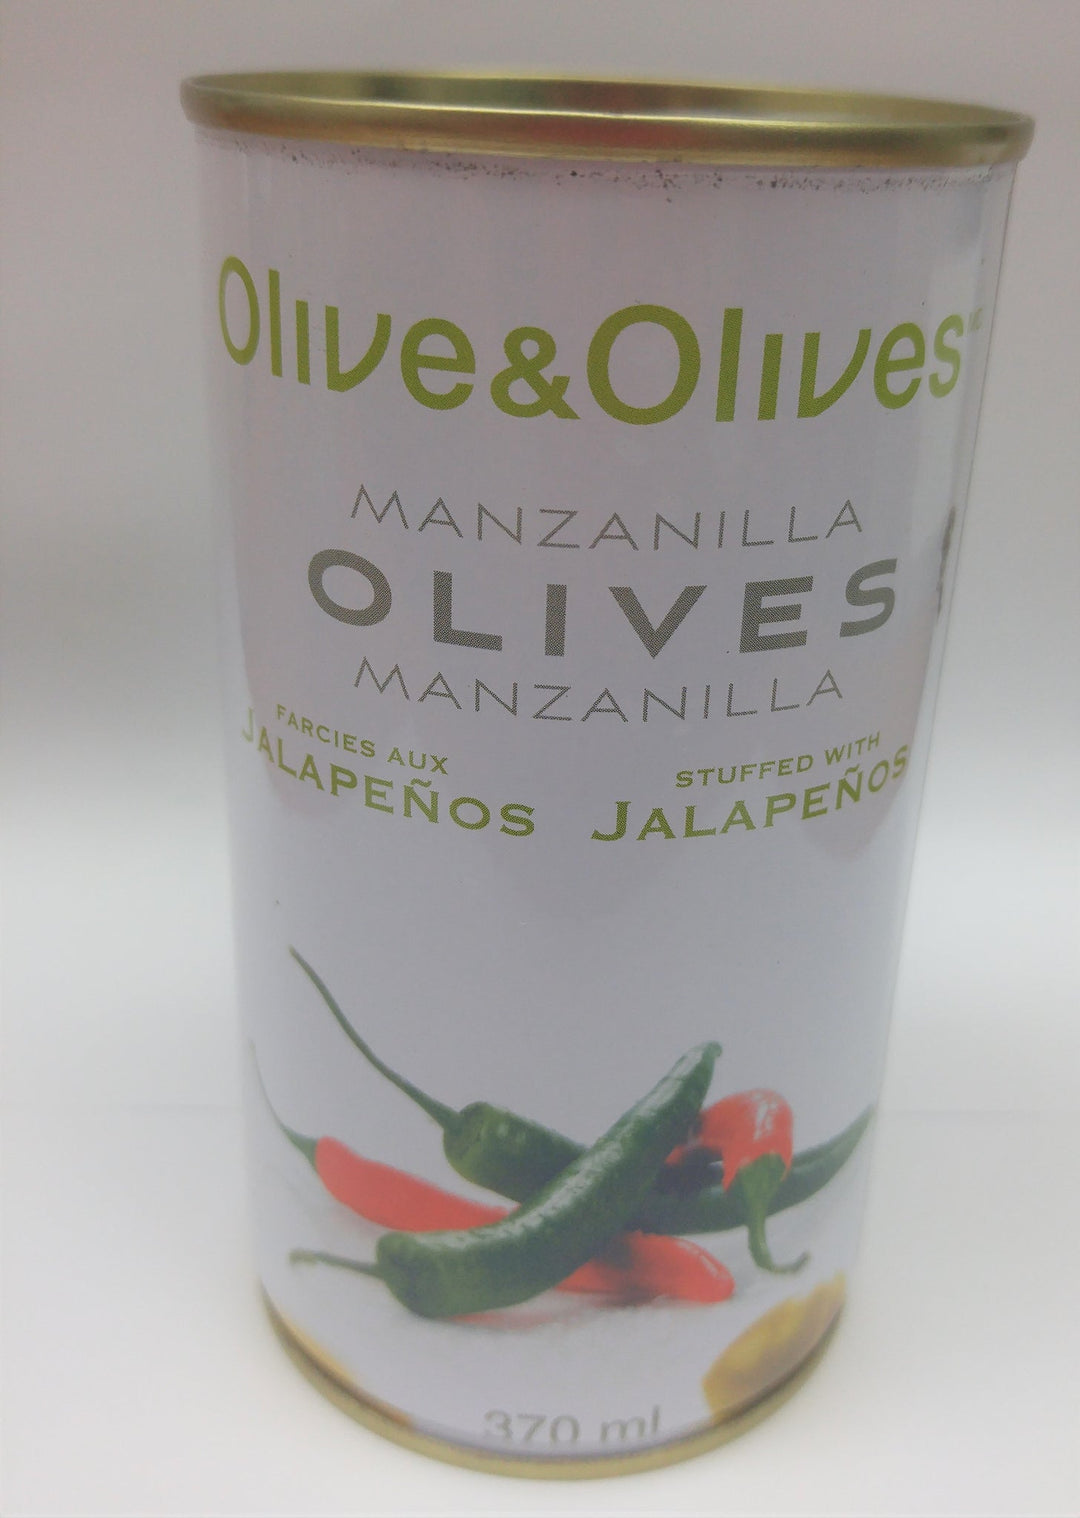 OLIVES & OLIVES FARCIES OLIVES JALAPENO